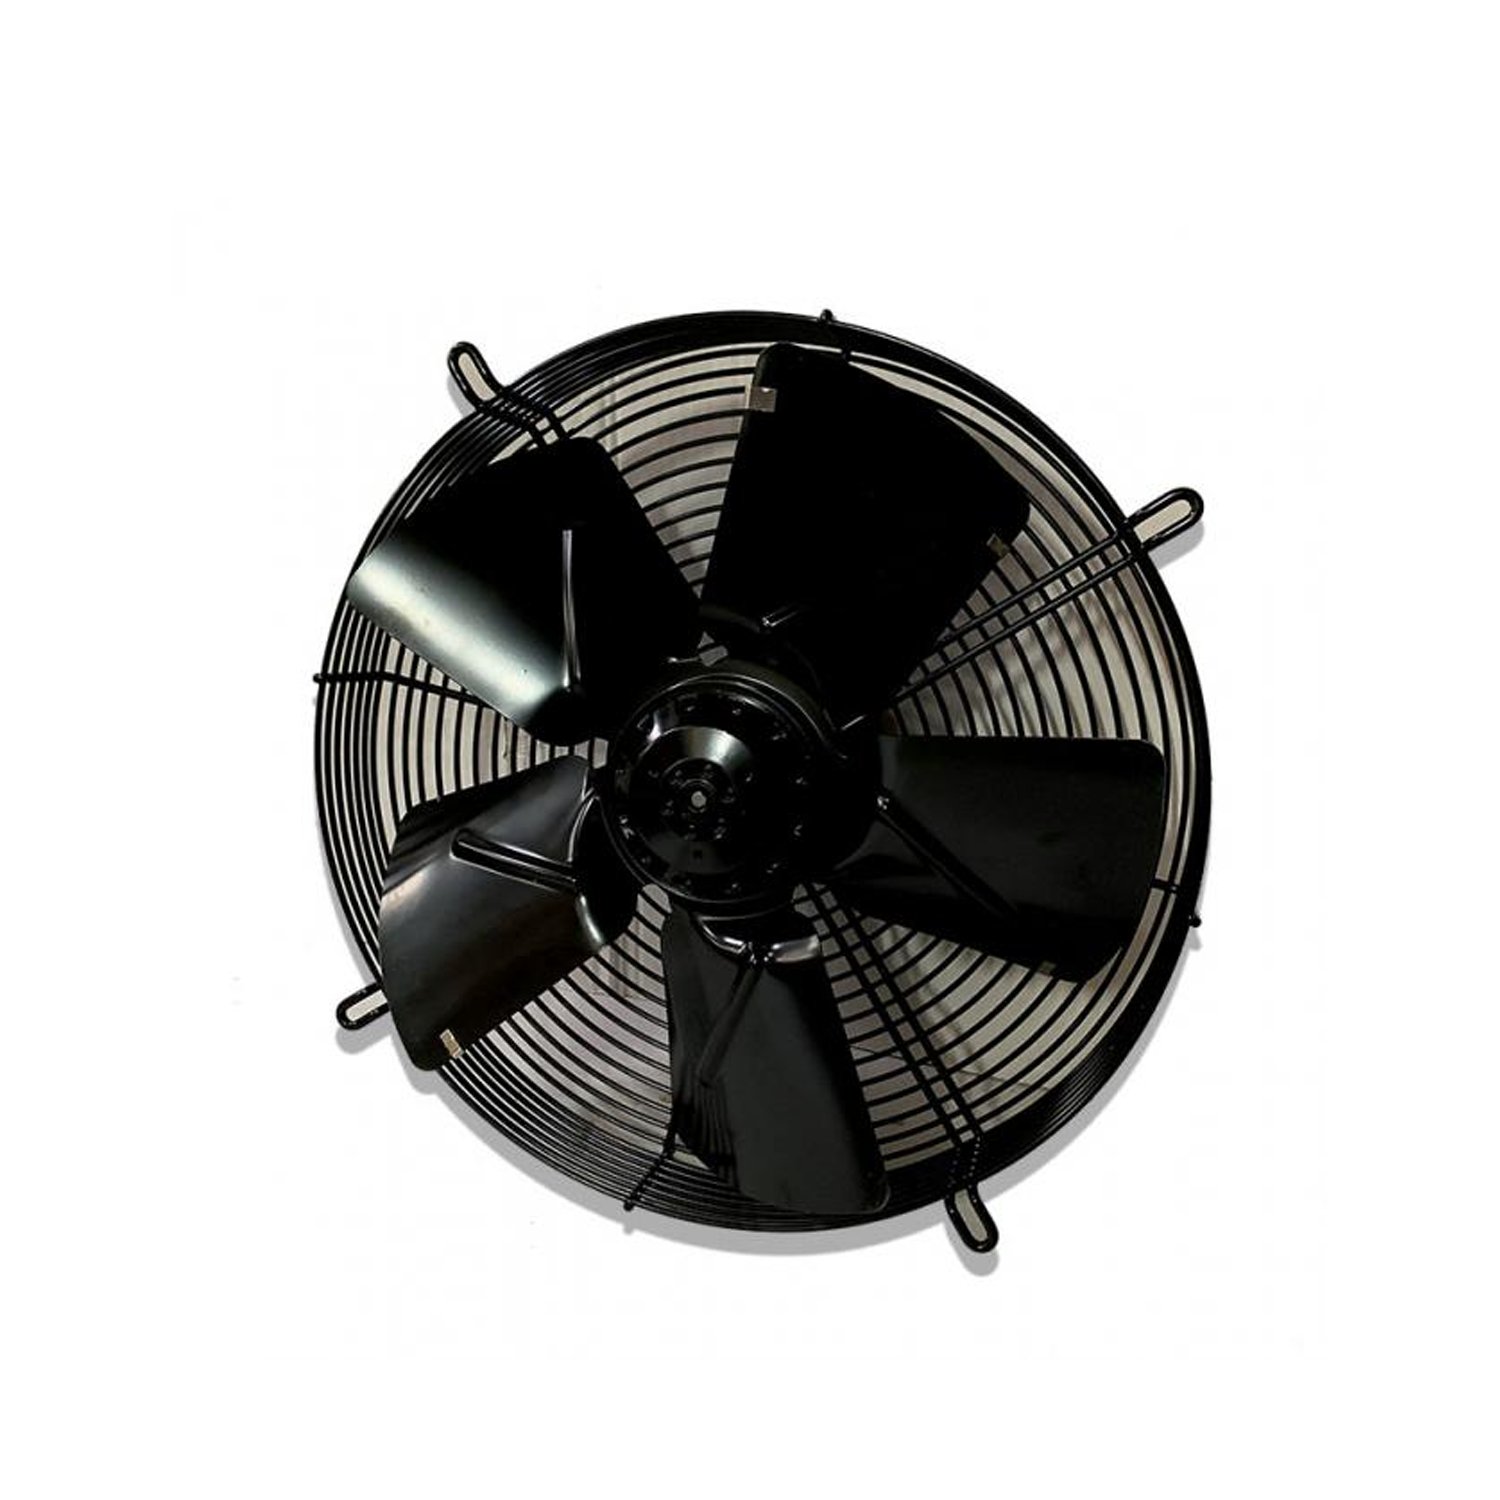 Ventilator-Heizung-Wärmetauscher-Ventilator-Heizung - Fan png